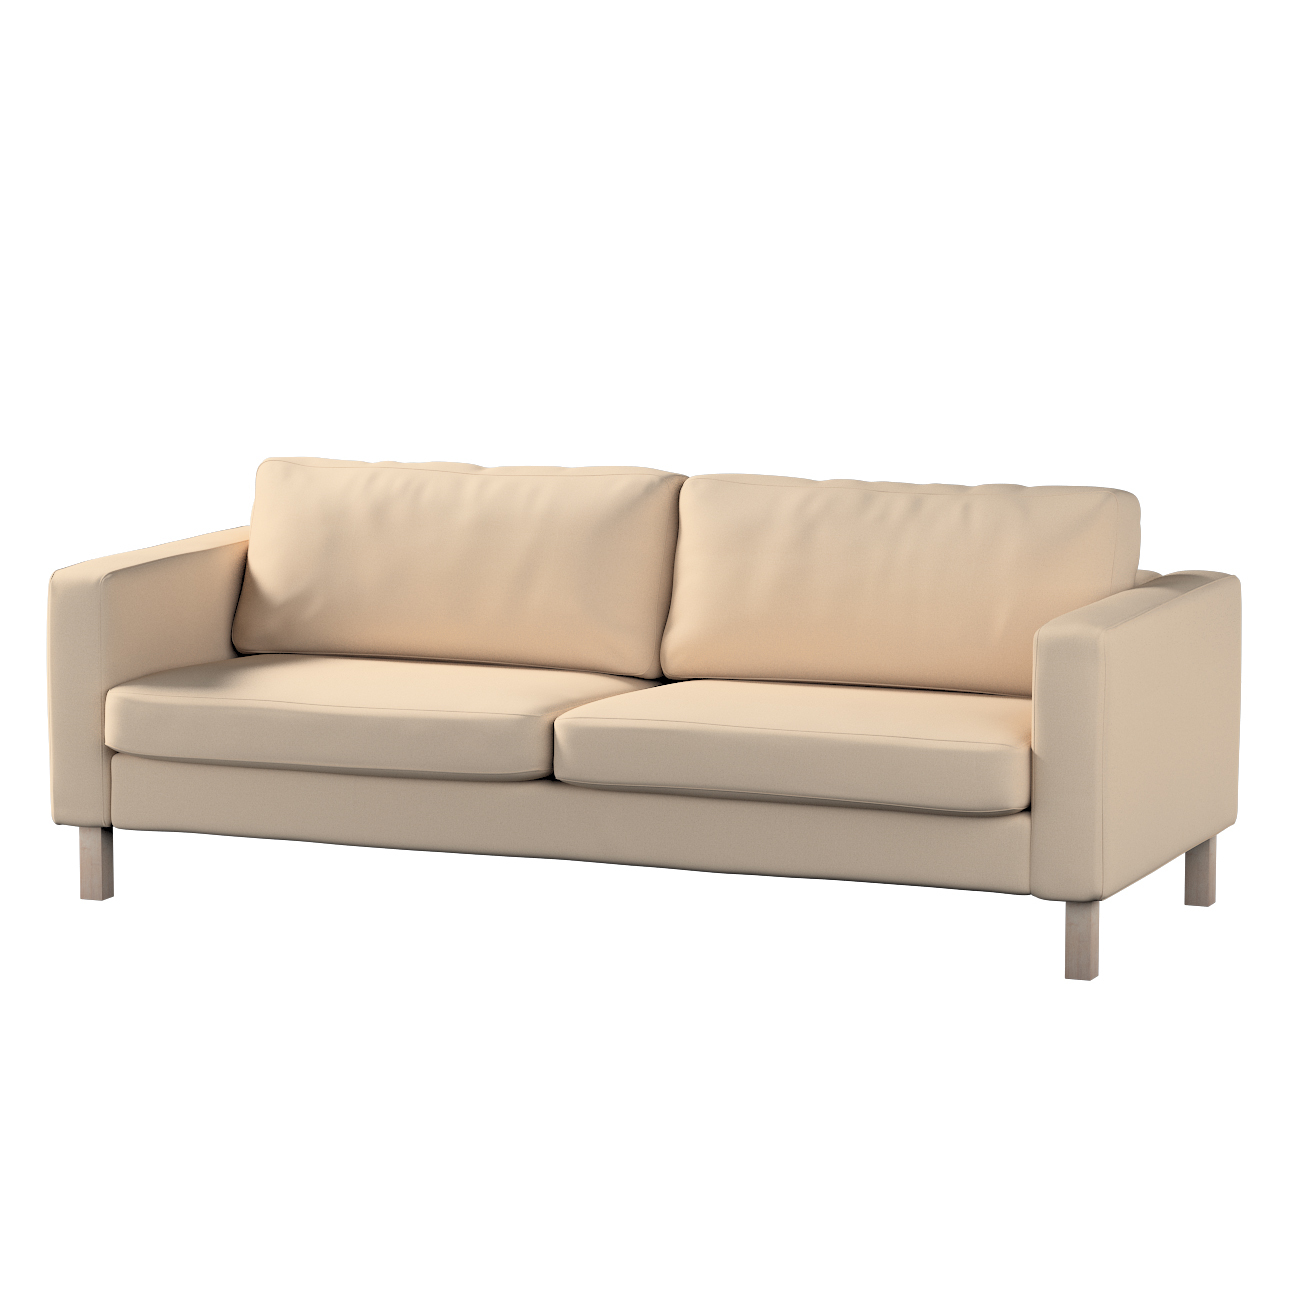 Bezug für Karlstad 3-Sitzer Sofa nicht ausklappbar, kurz, creme-beige, Bezu günstig online kaufen